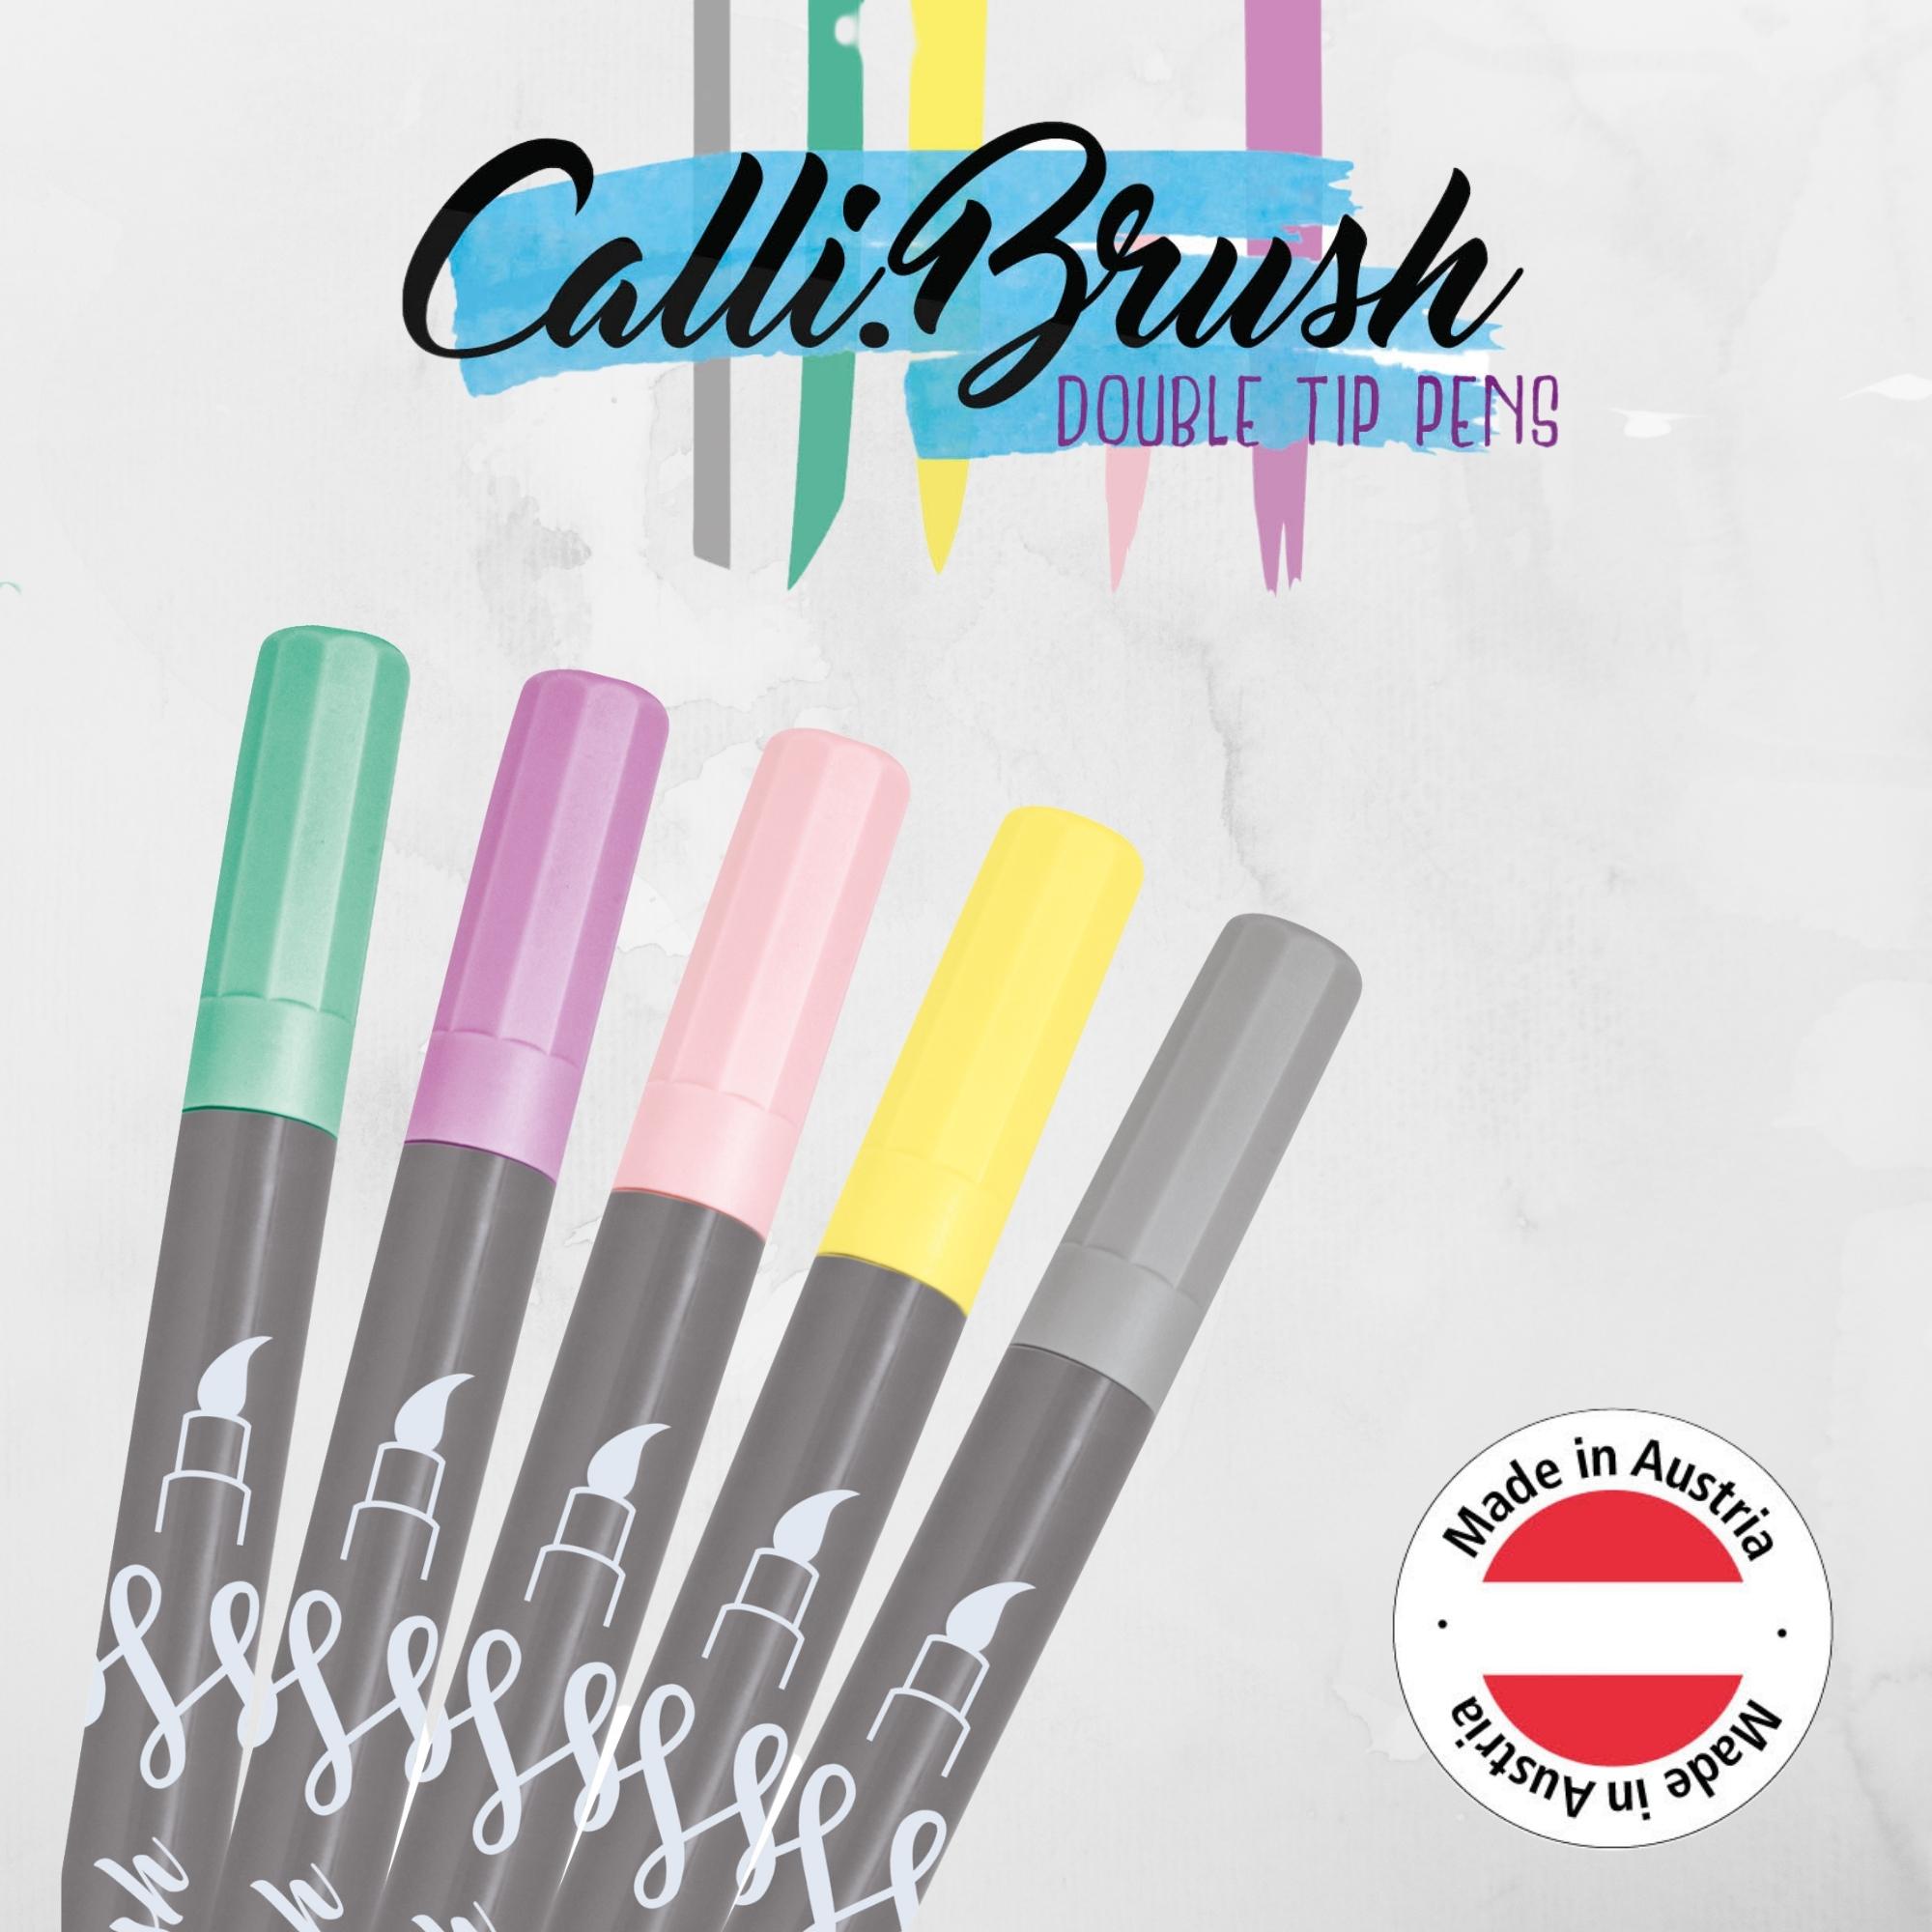 Set Calli.Brush Pens, 5 pcs.